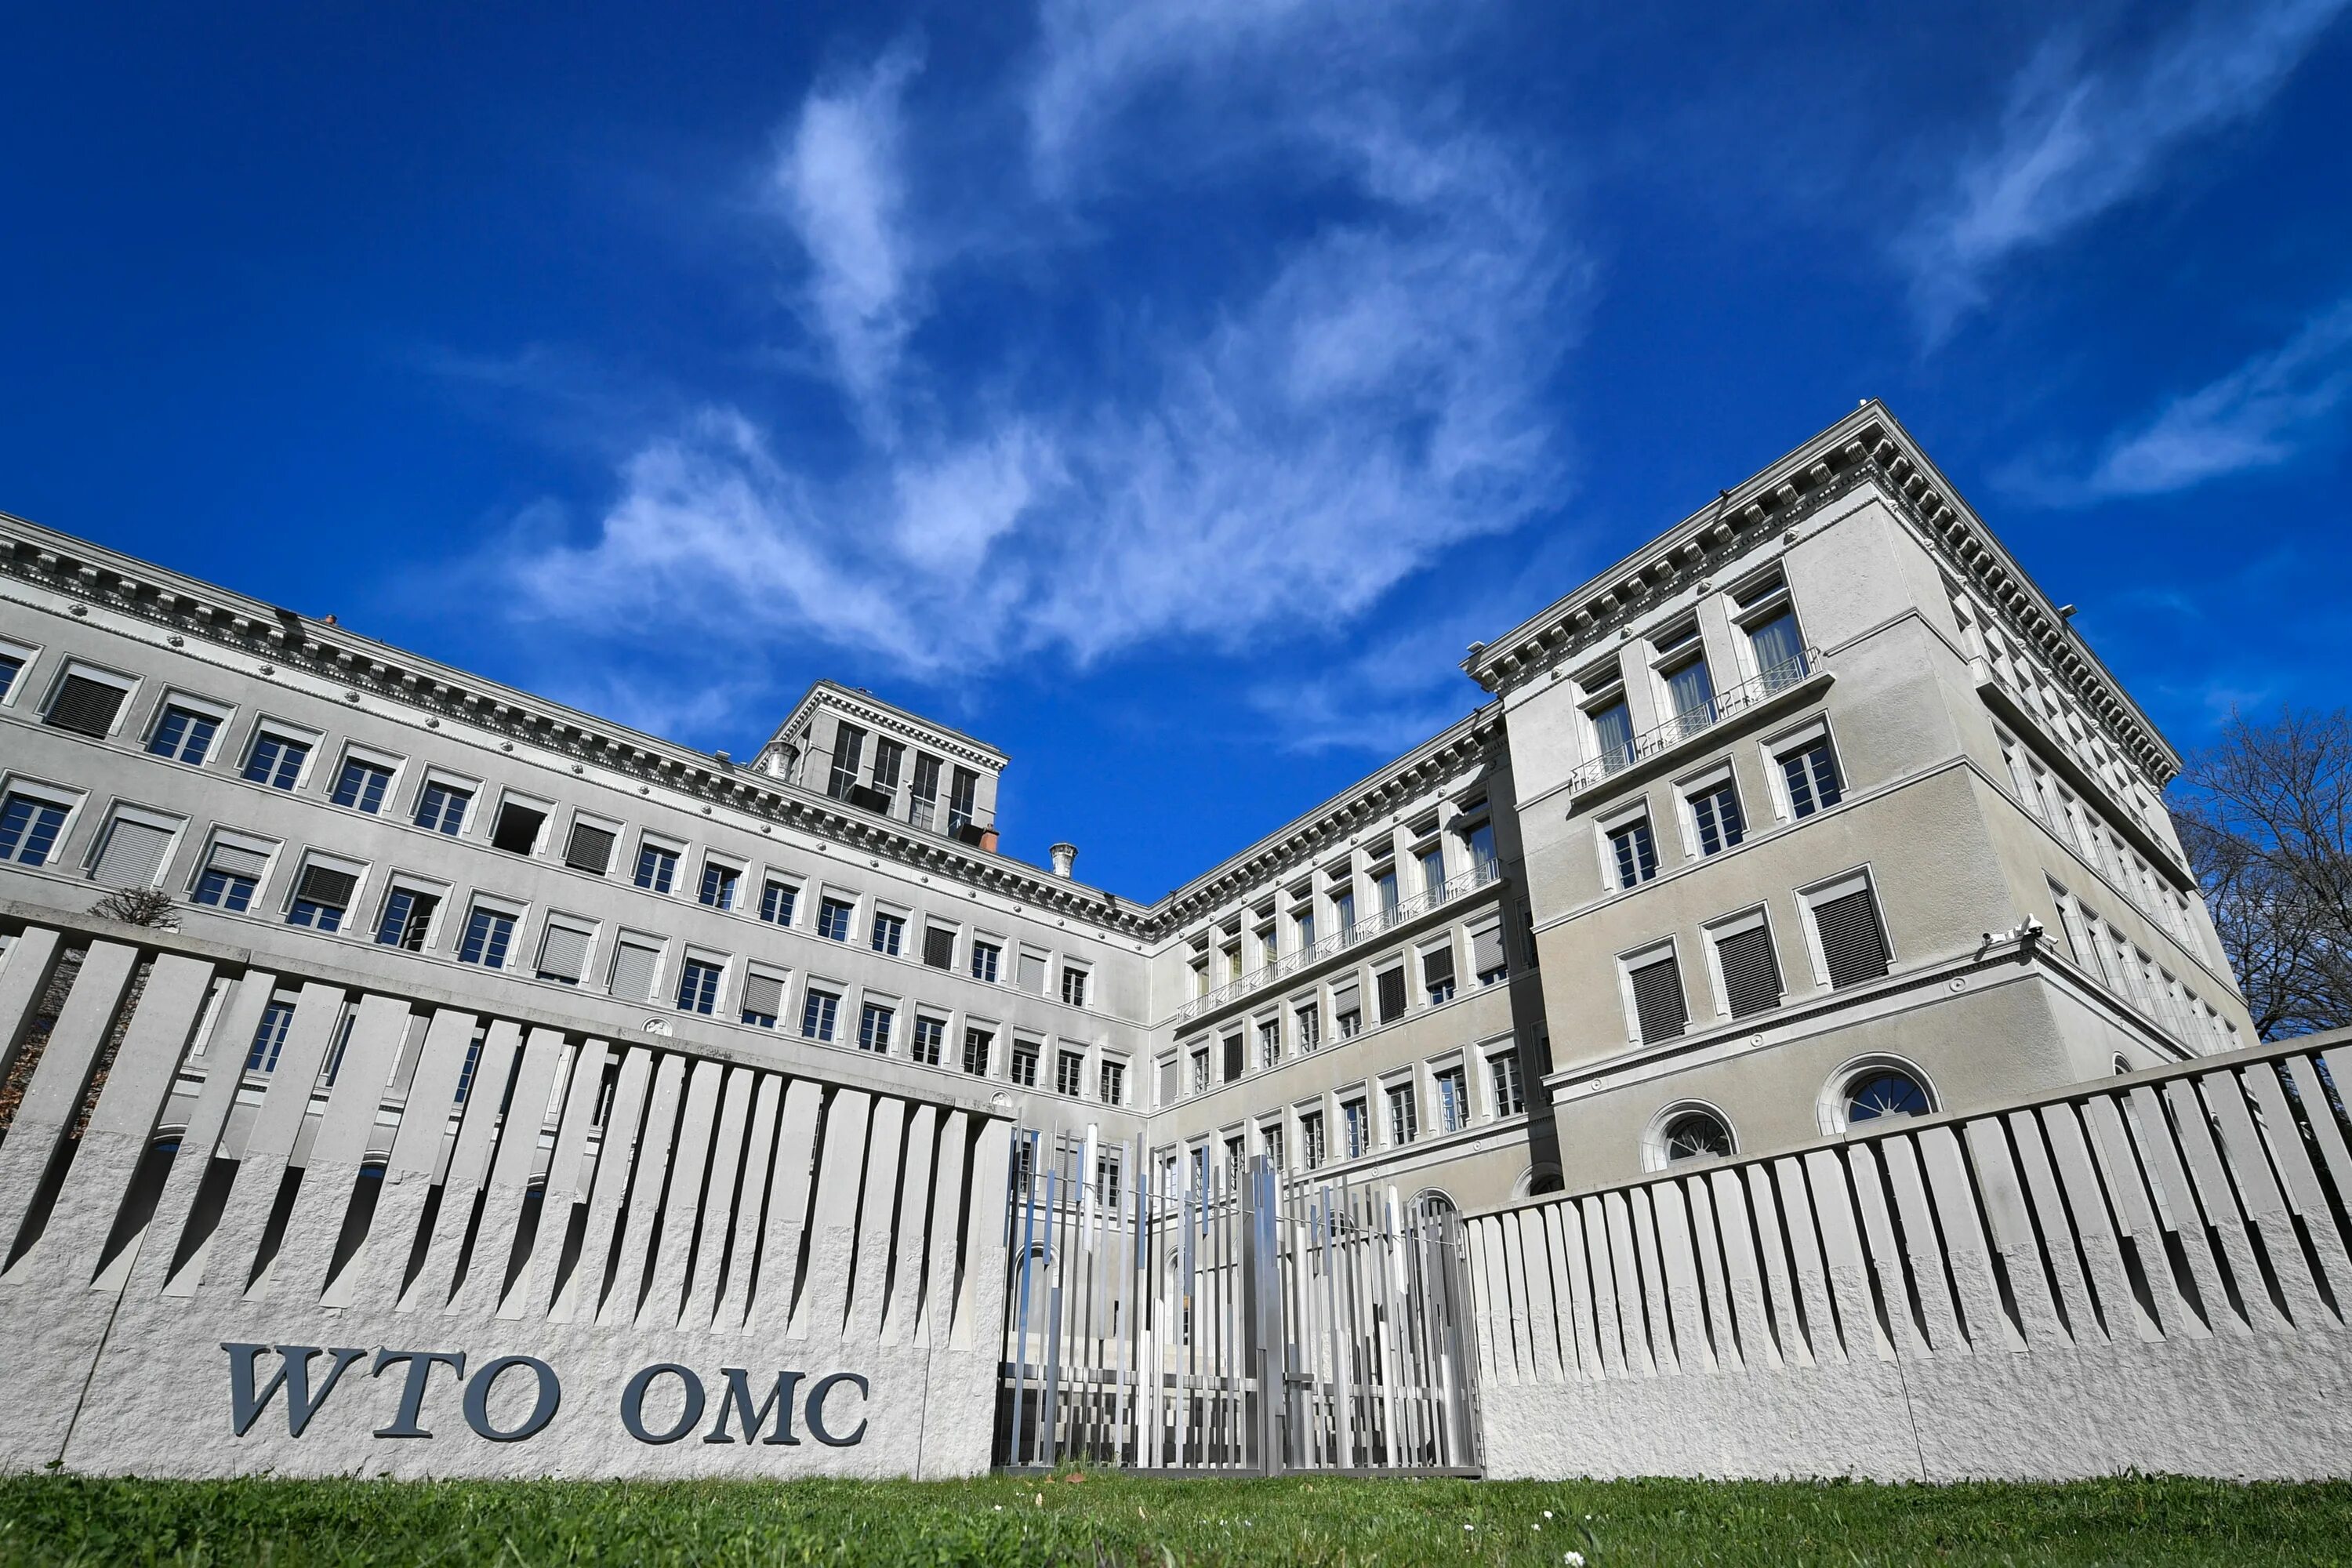 Новая торговая организация. Штаб квартира ВТО В Женеве. Здание ВТО В Женеве. Всемирная торговая организация Женева. ВТО Женева Швейцария.